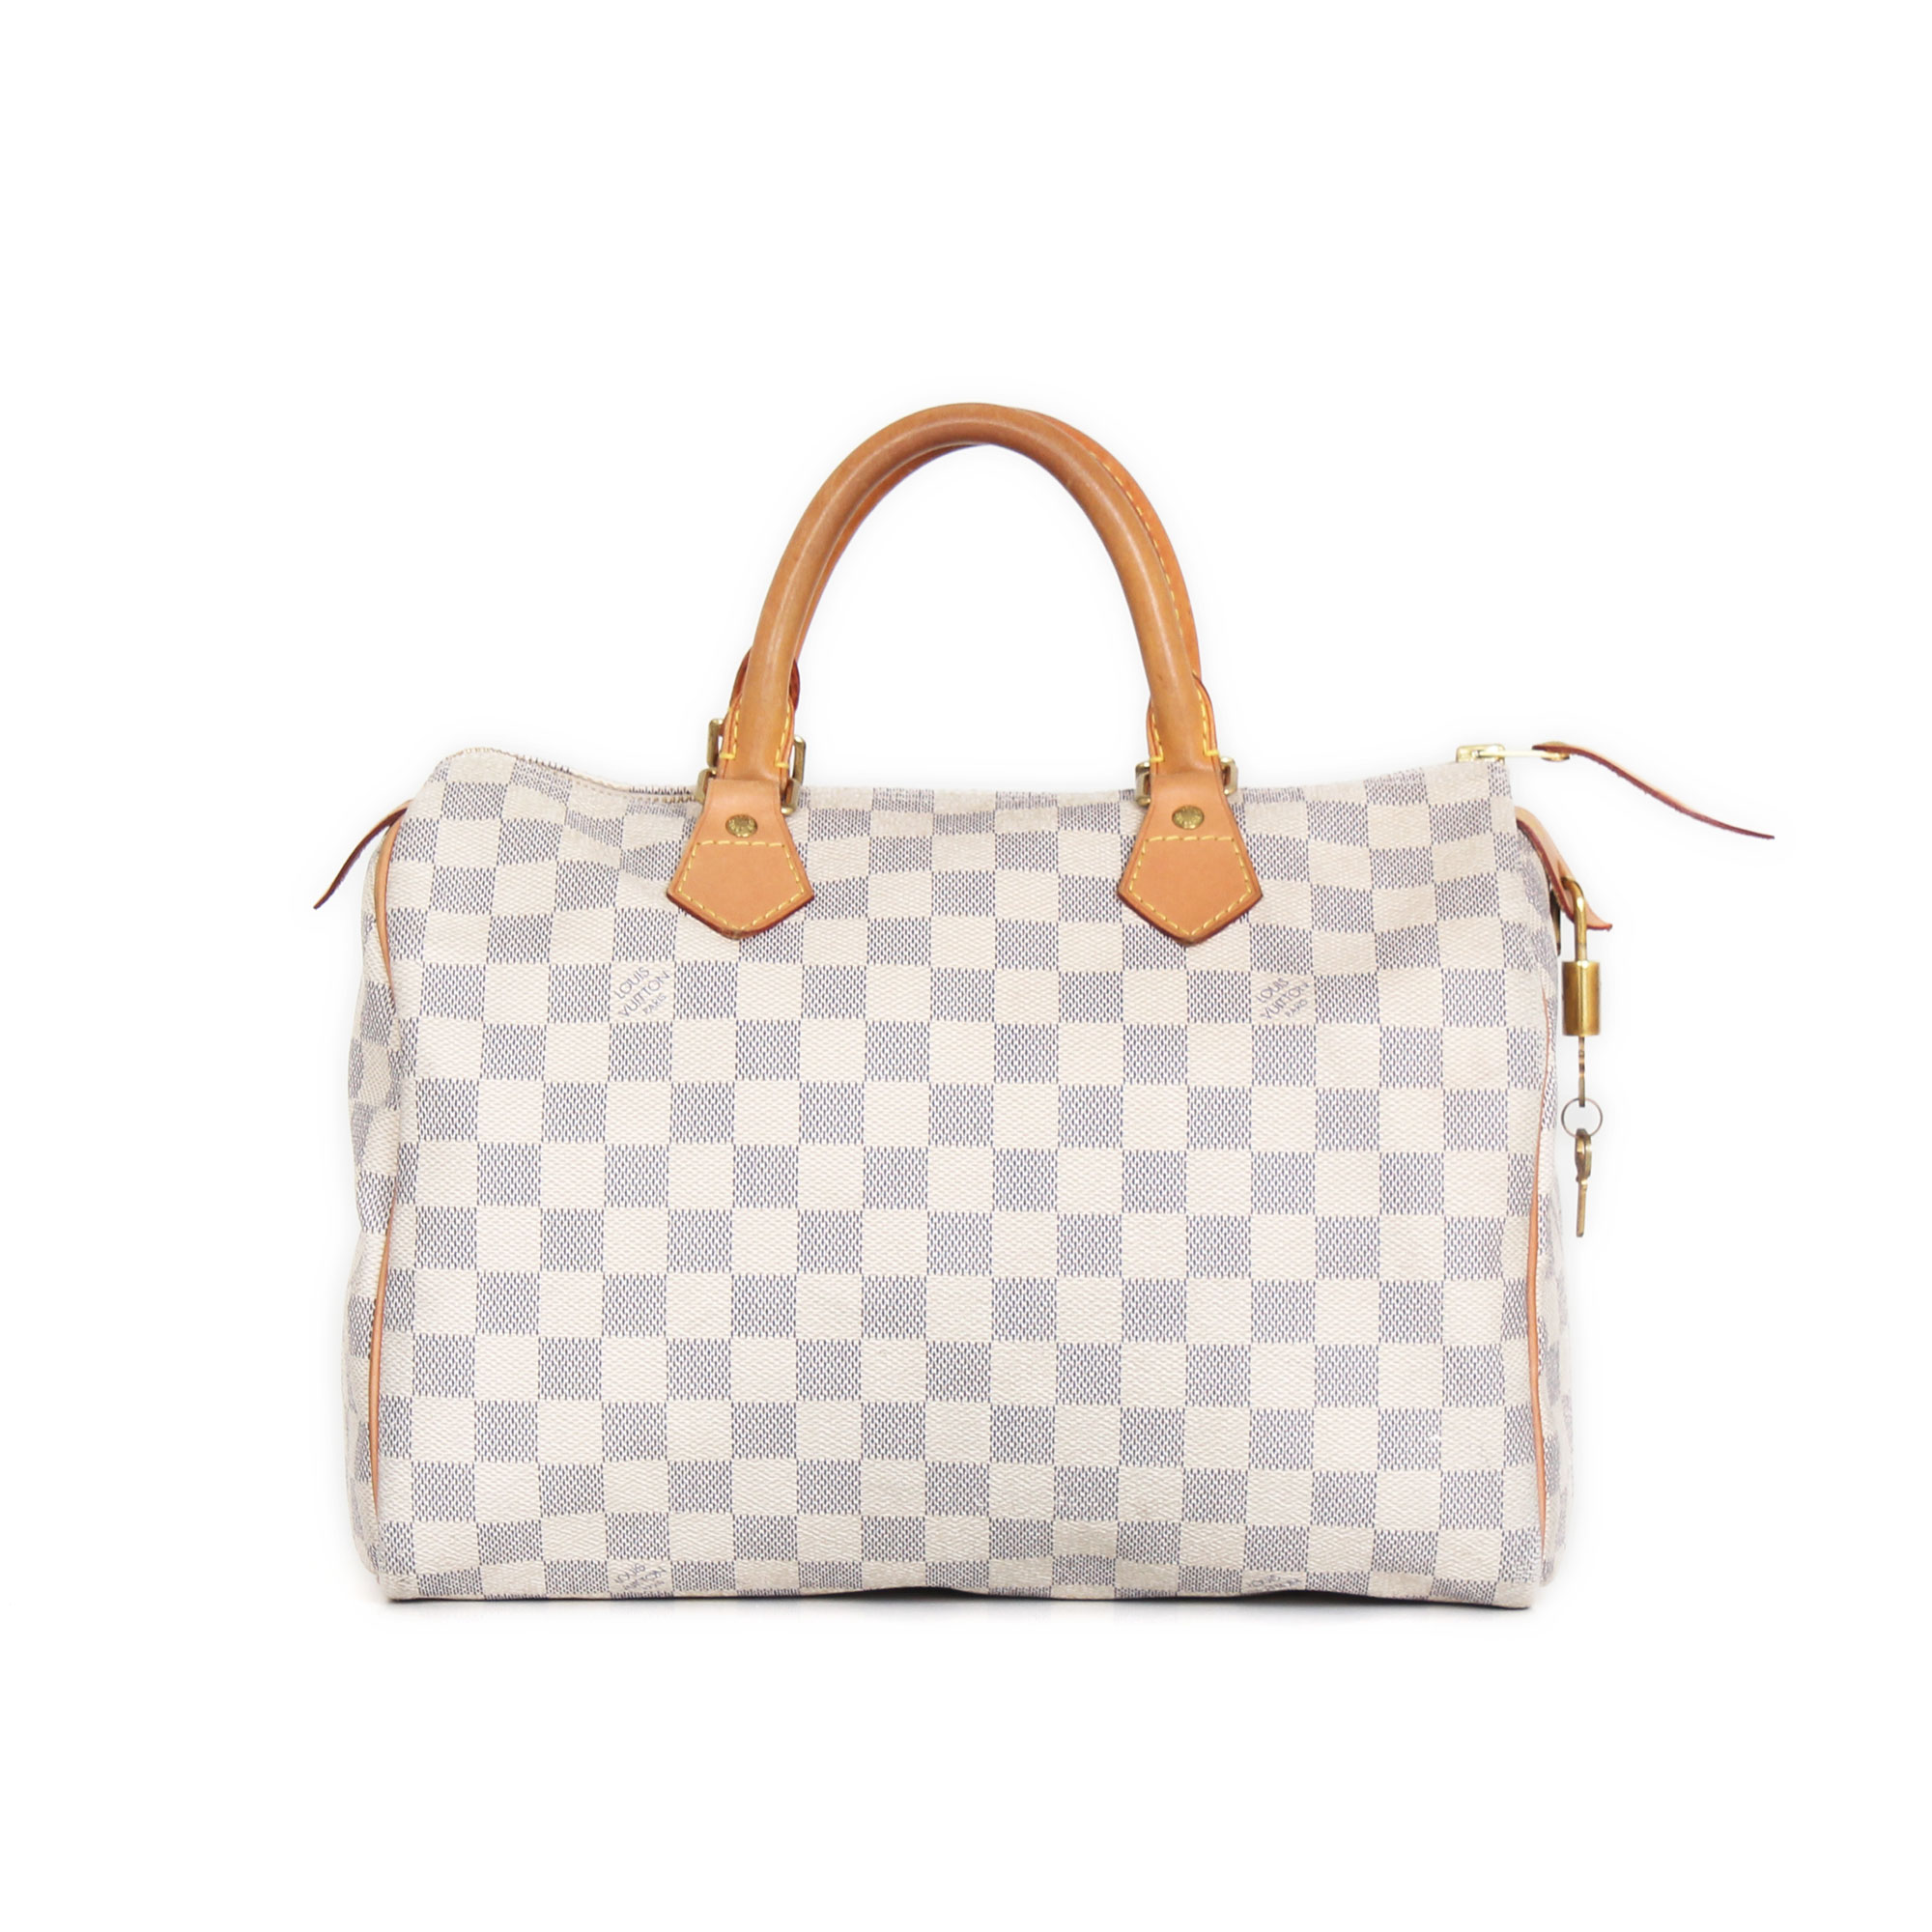 Wonderlijk Louis Vuitton Speedy 30 Damier Azur Handbag | CBL Bags ZQ-94